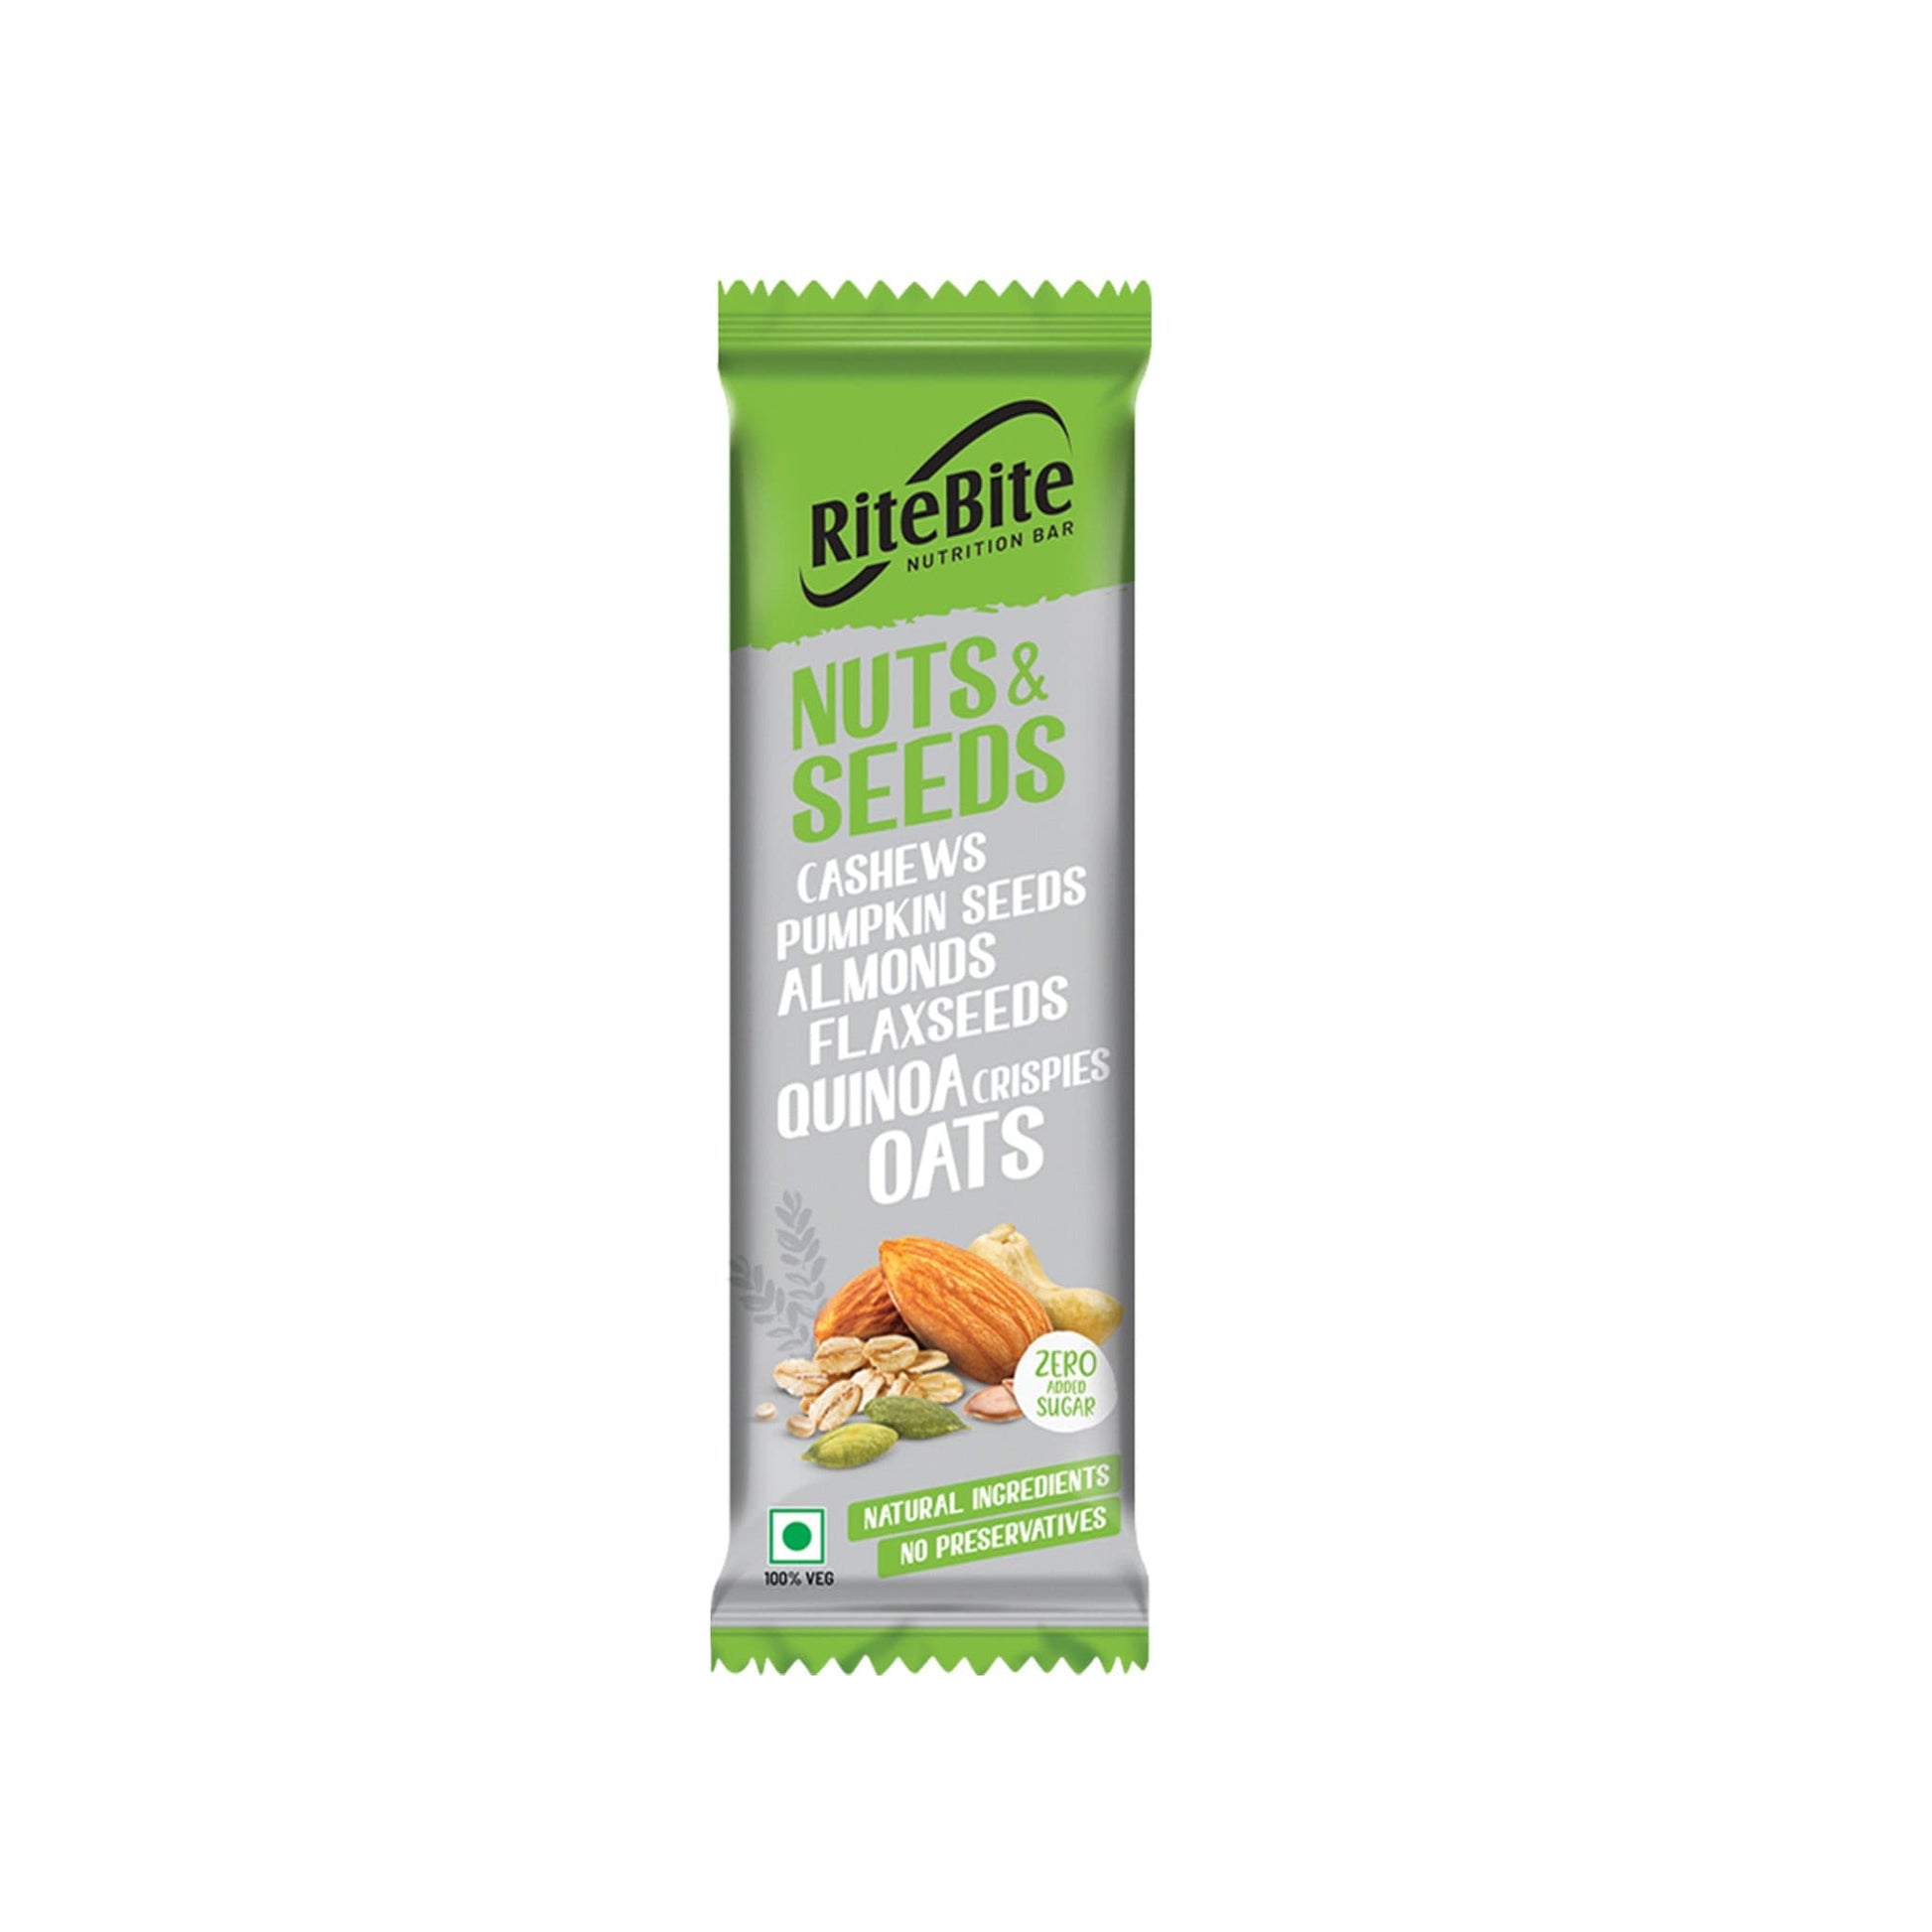 Ritebite Nuts & Seeds Bar (Pack of 3)